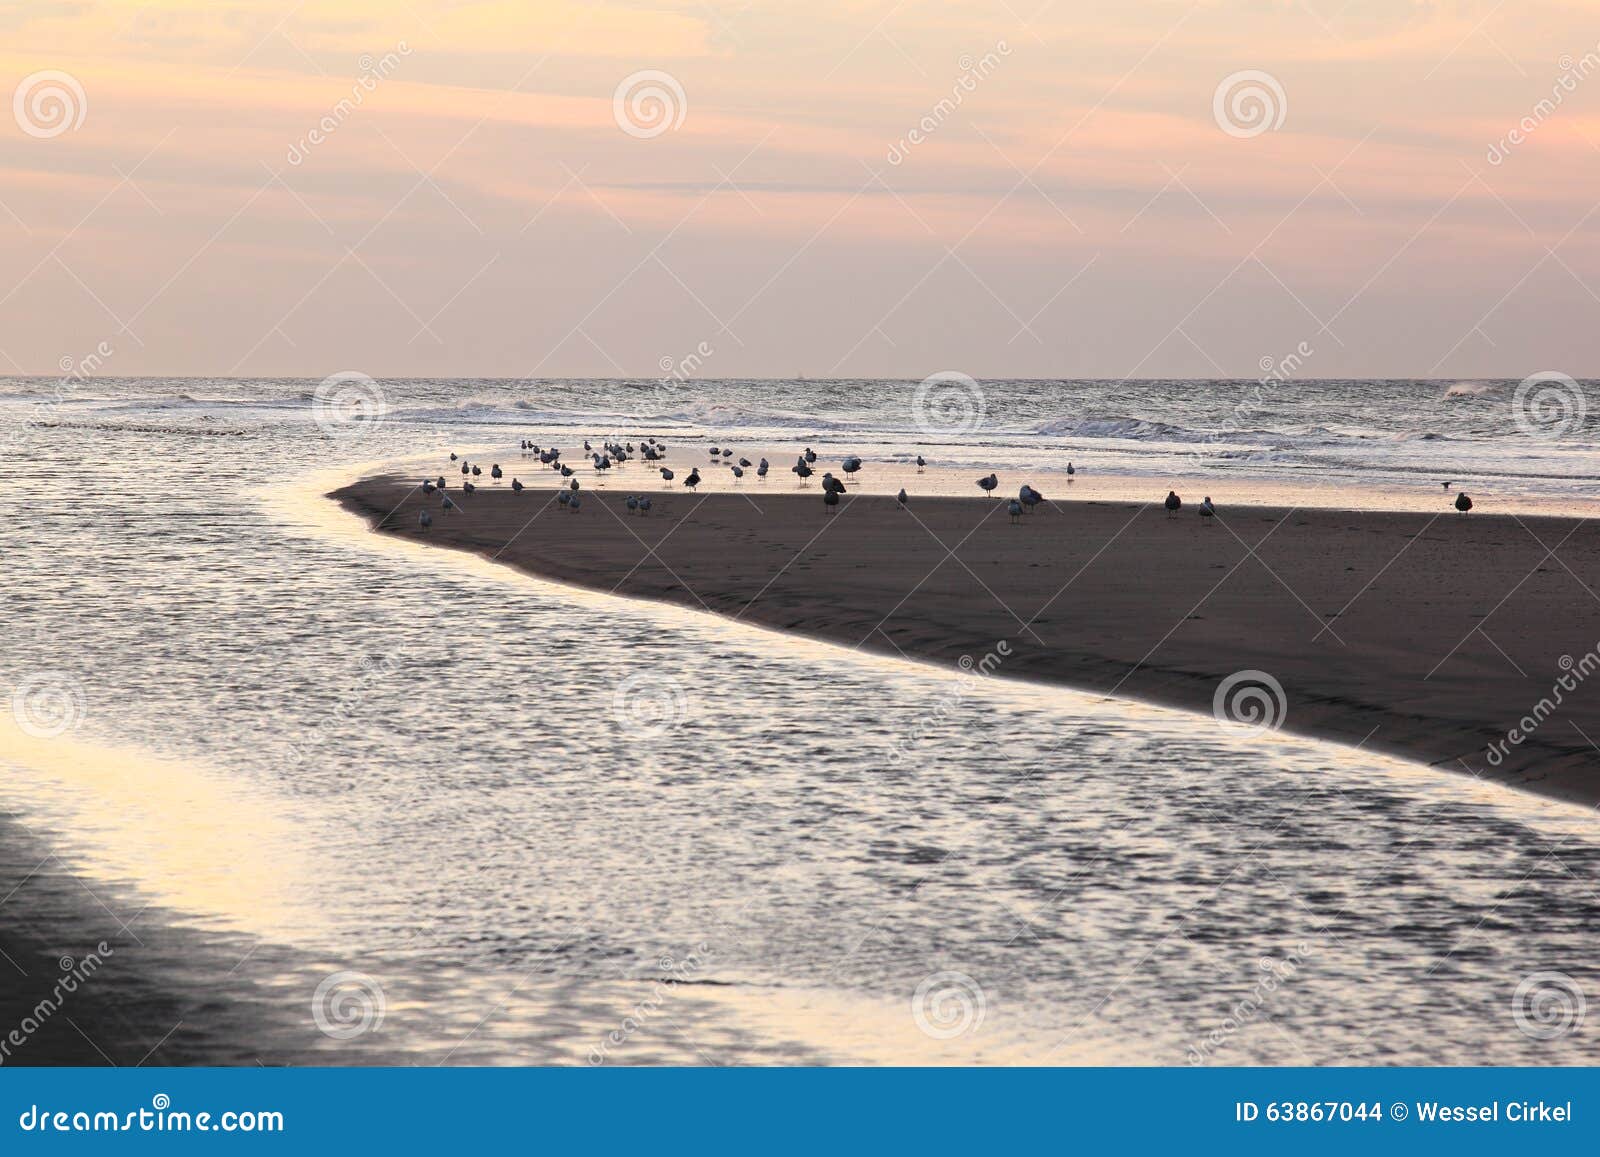 gulls in evening light at ameland beach, holland